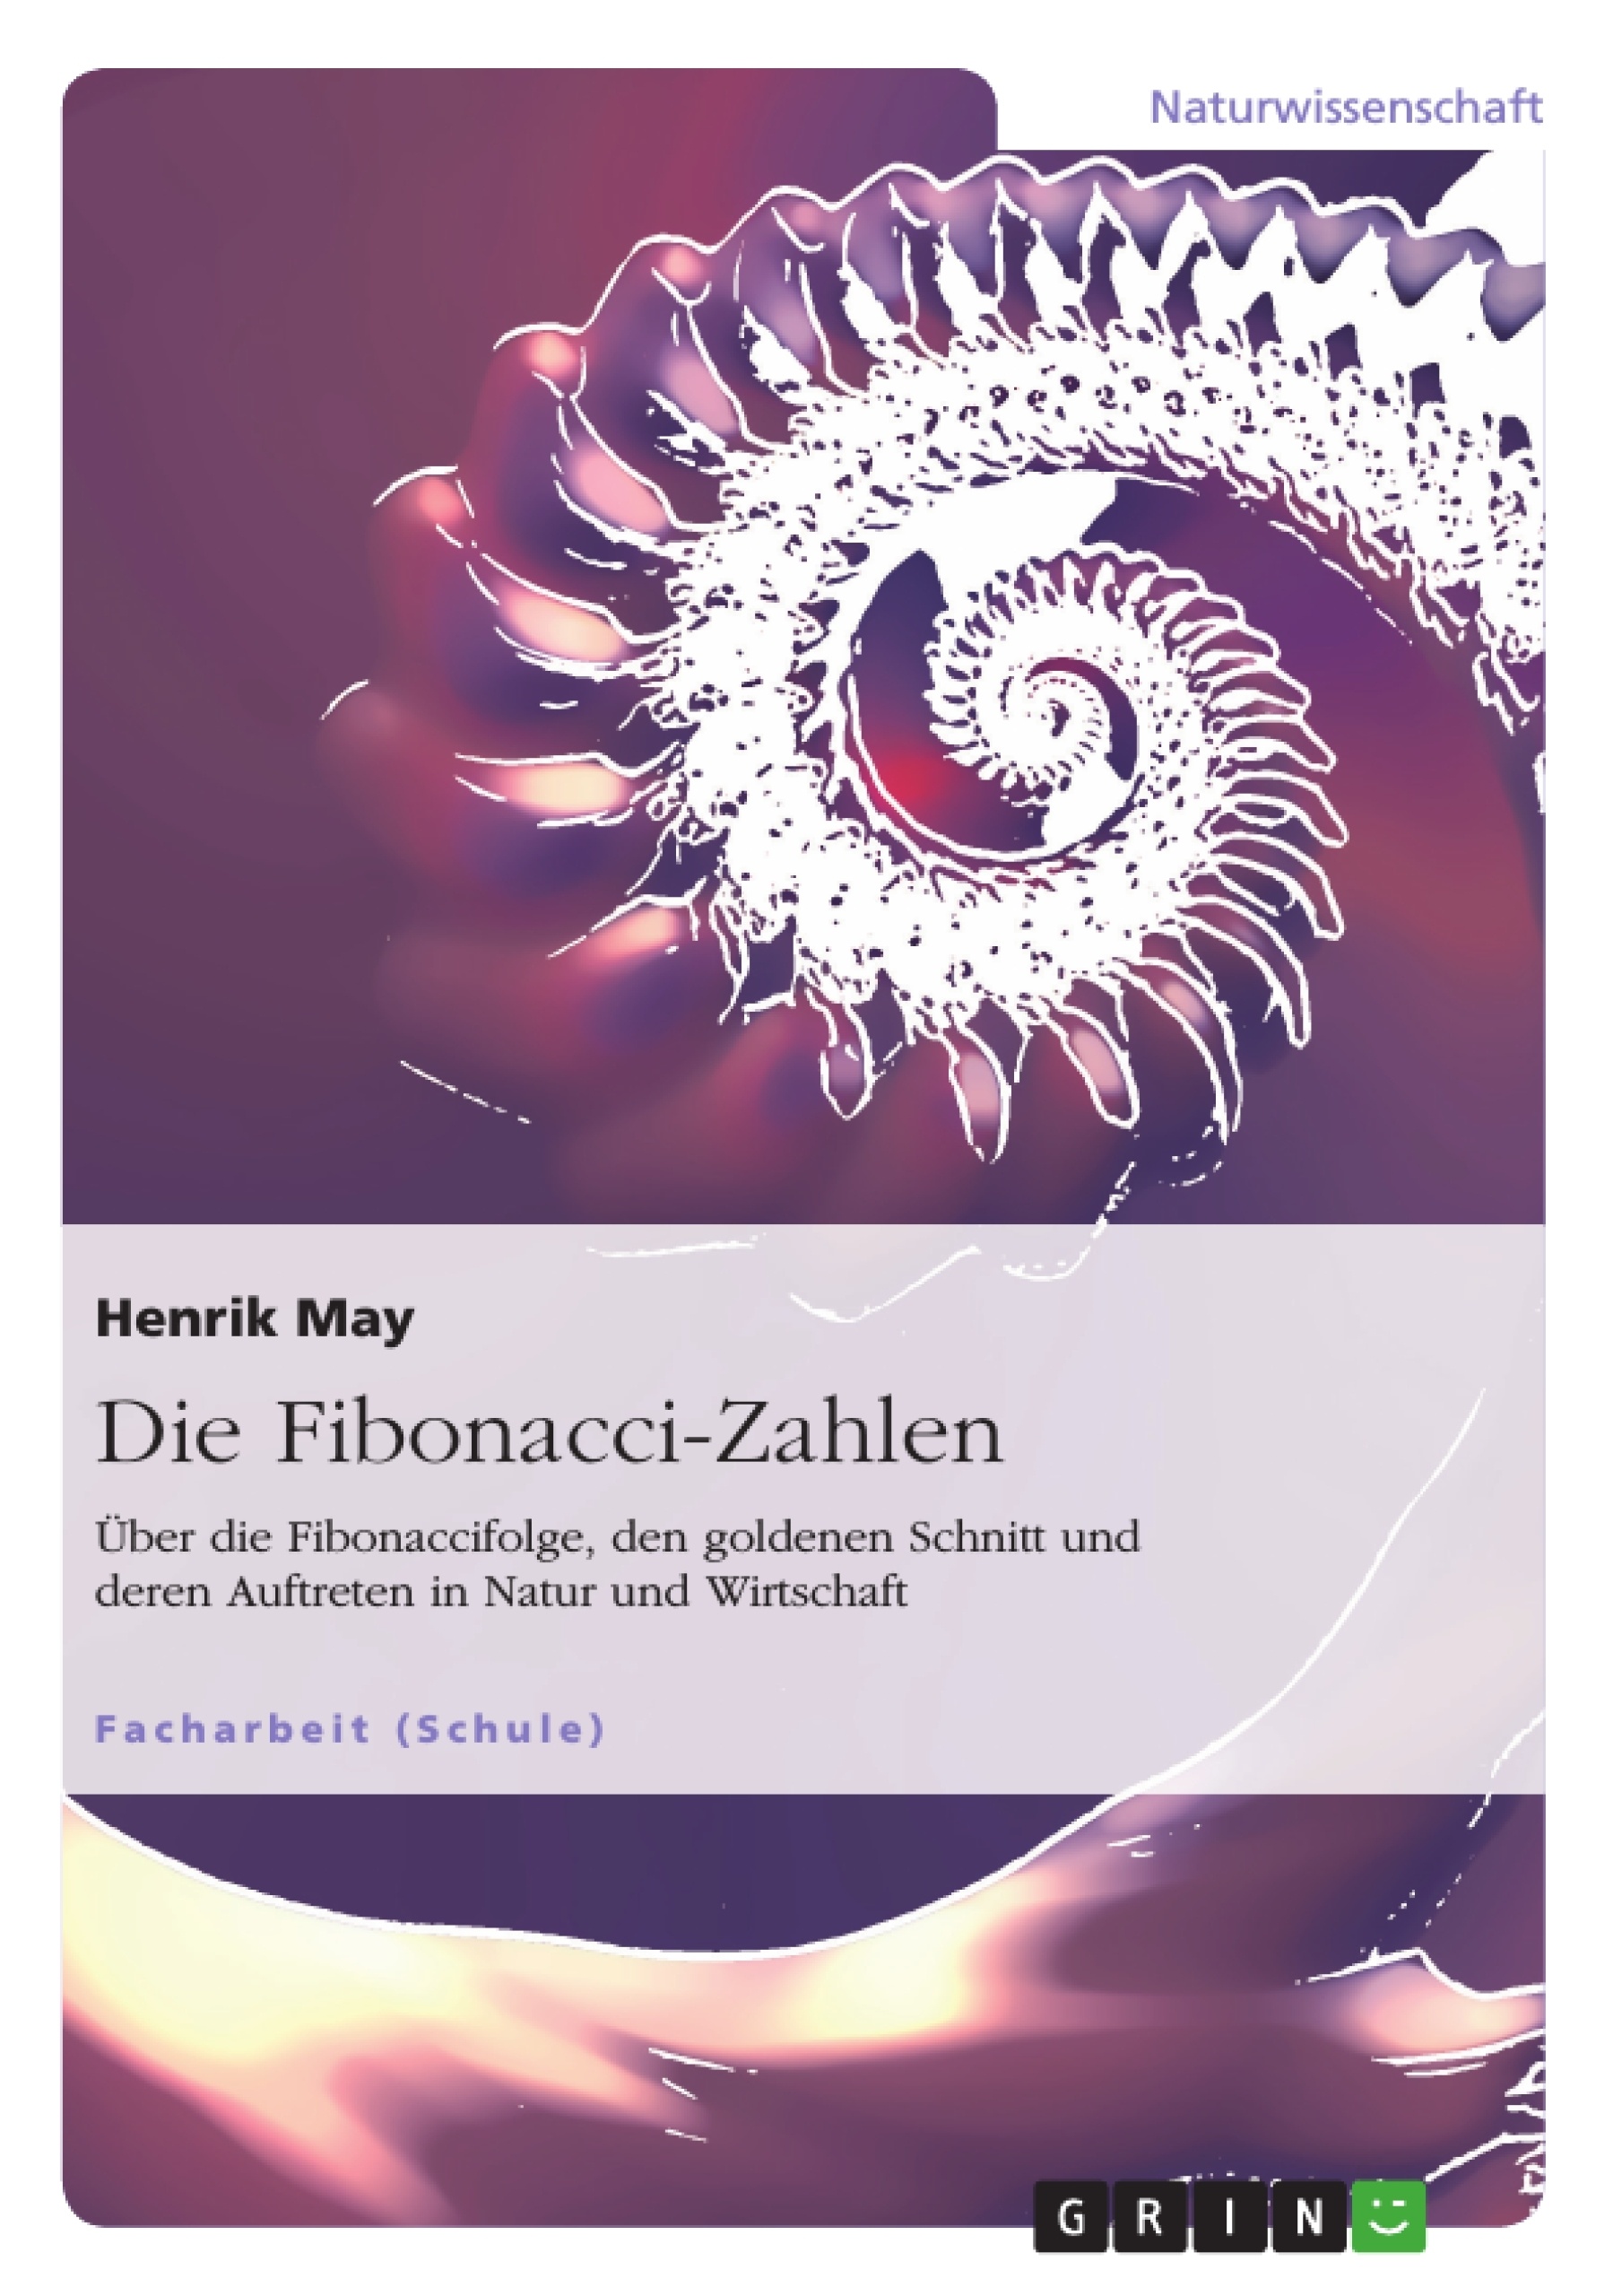 Titel: Die Fibonacci-Zahlen. Über die Fibonaccifolge, den goldenen Schnitt und deren Auftreten in Natur und Wirtschaft